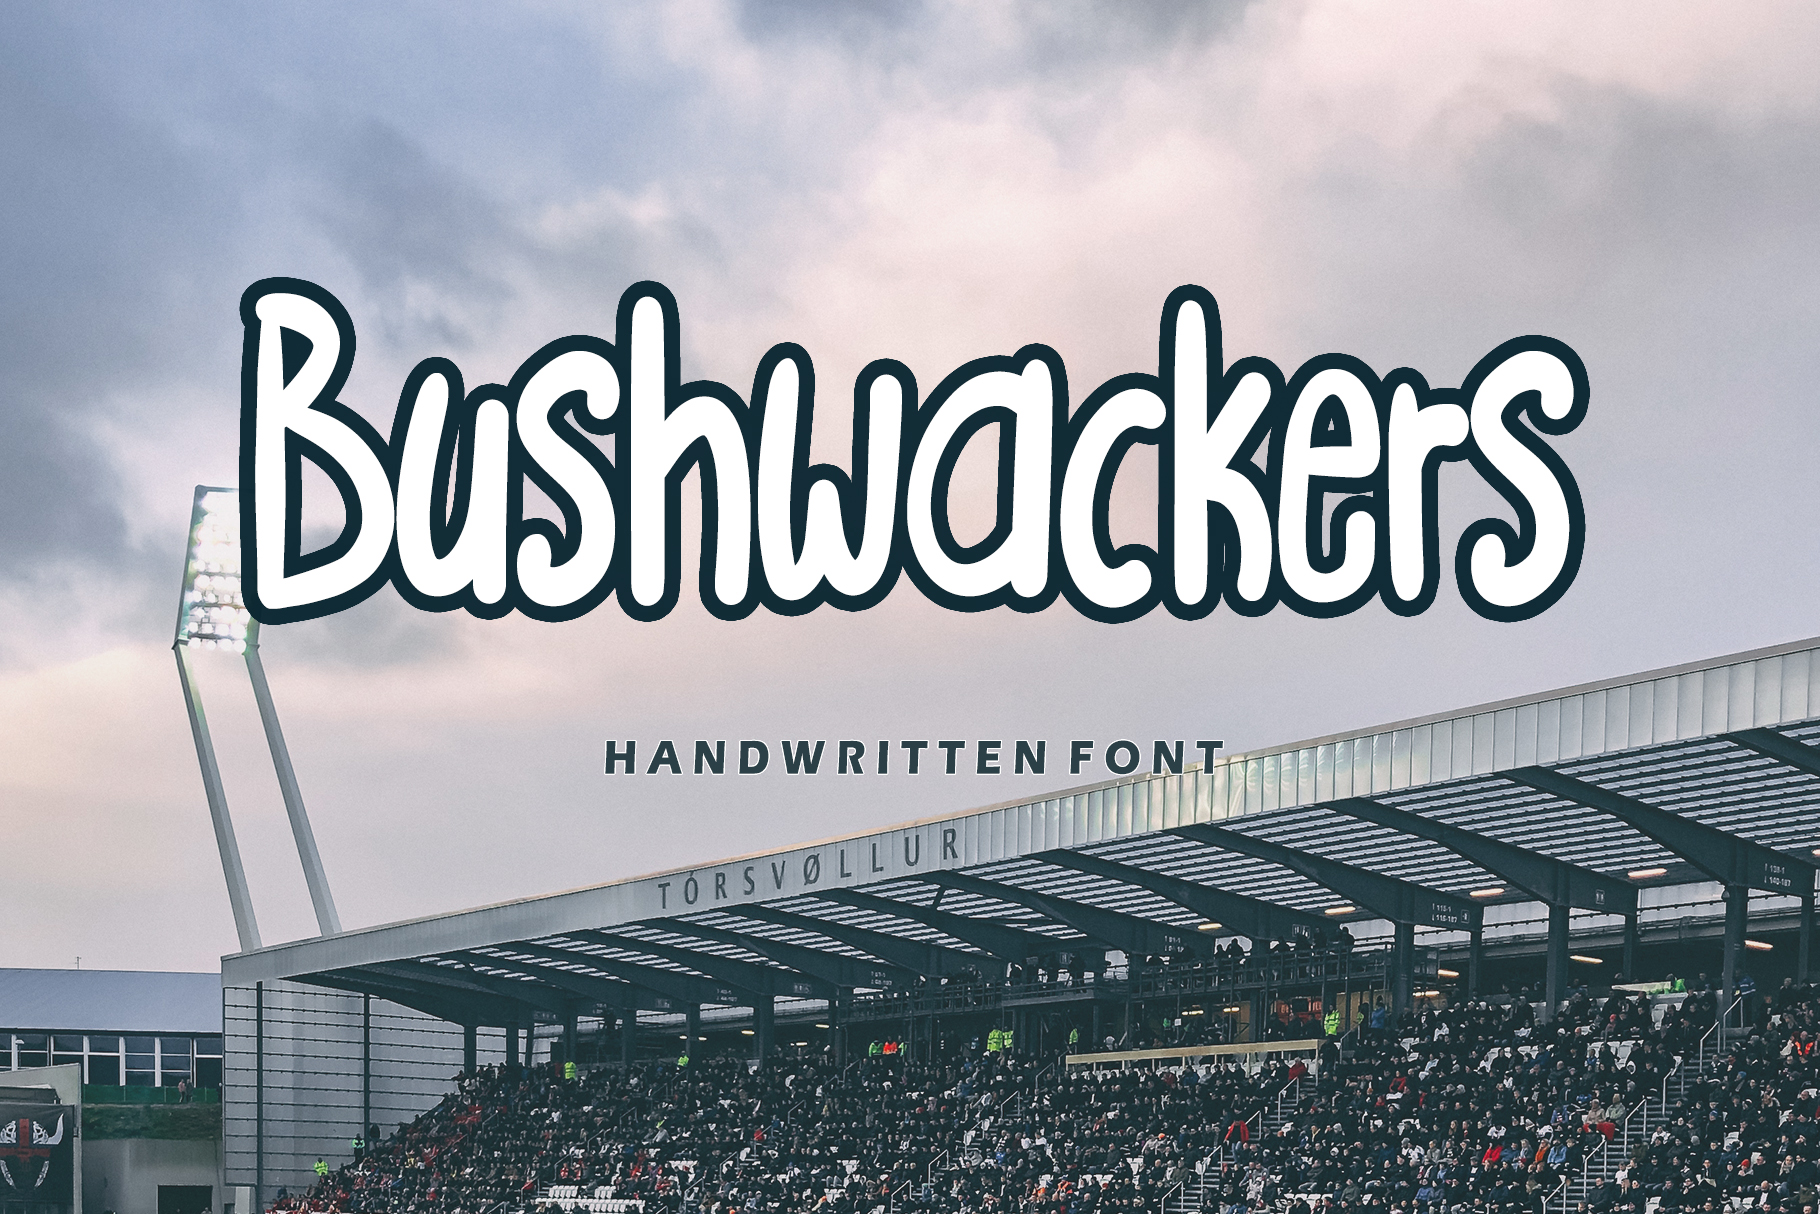 Bushwackers